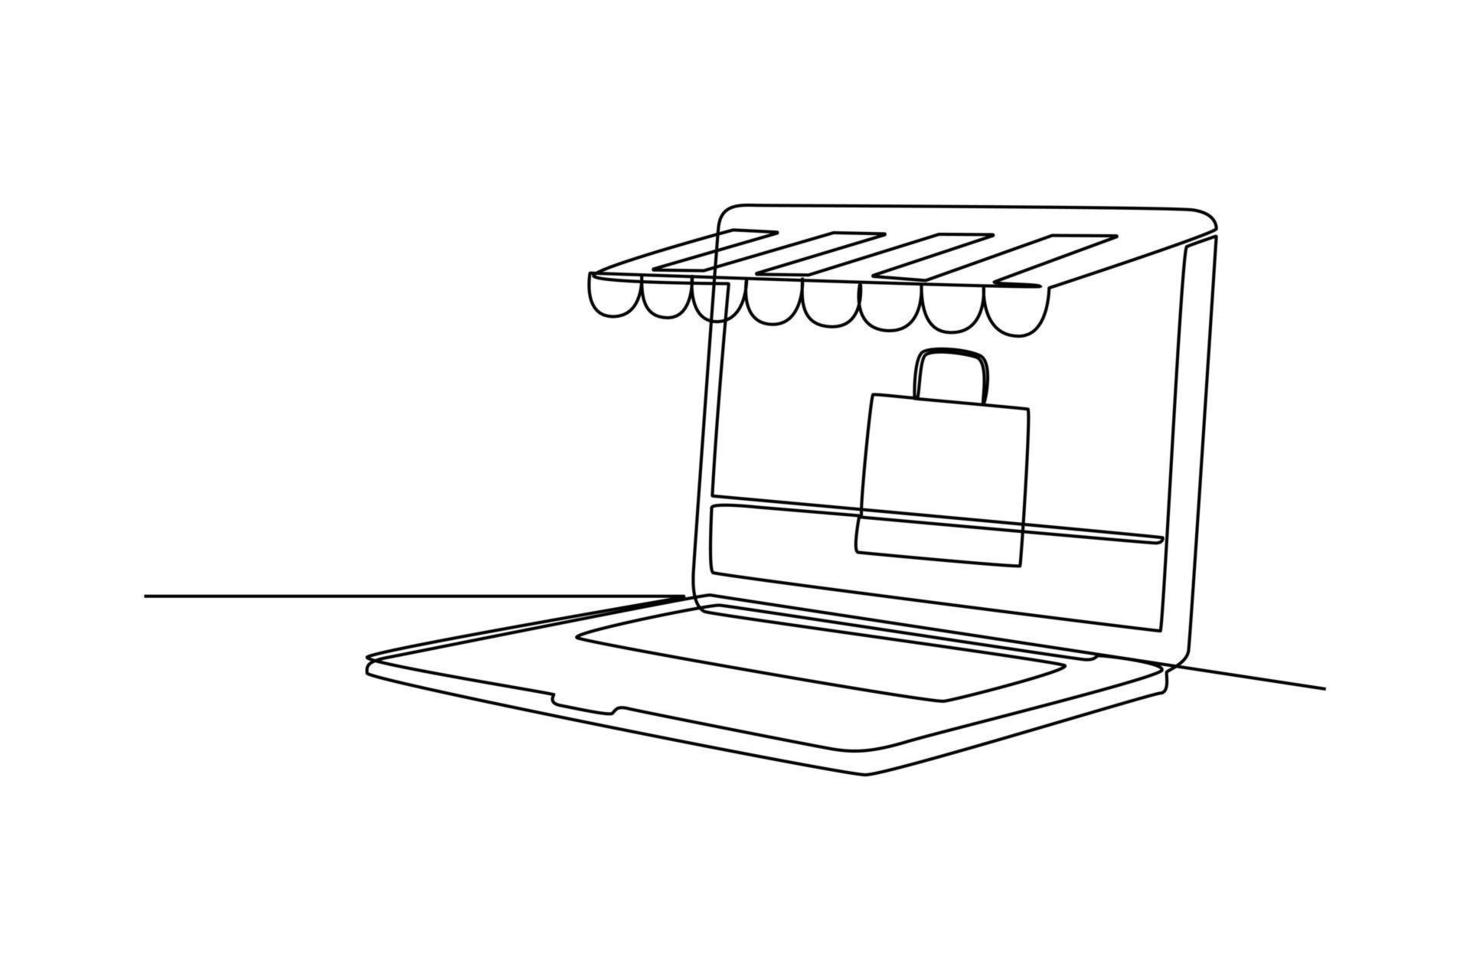 single een lijn tekening online boodschappen doen met laptop en tas. e-commerce concept. doorlopend lijn trek ontwerp grafisch vector illustratie.